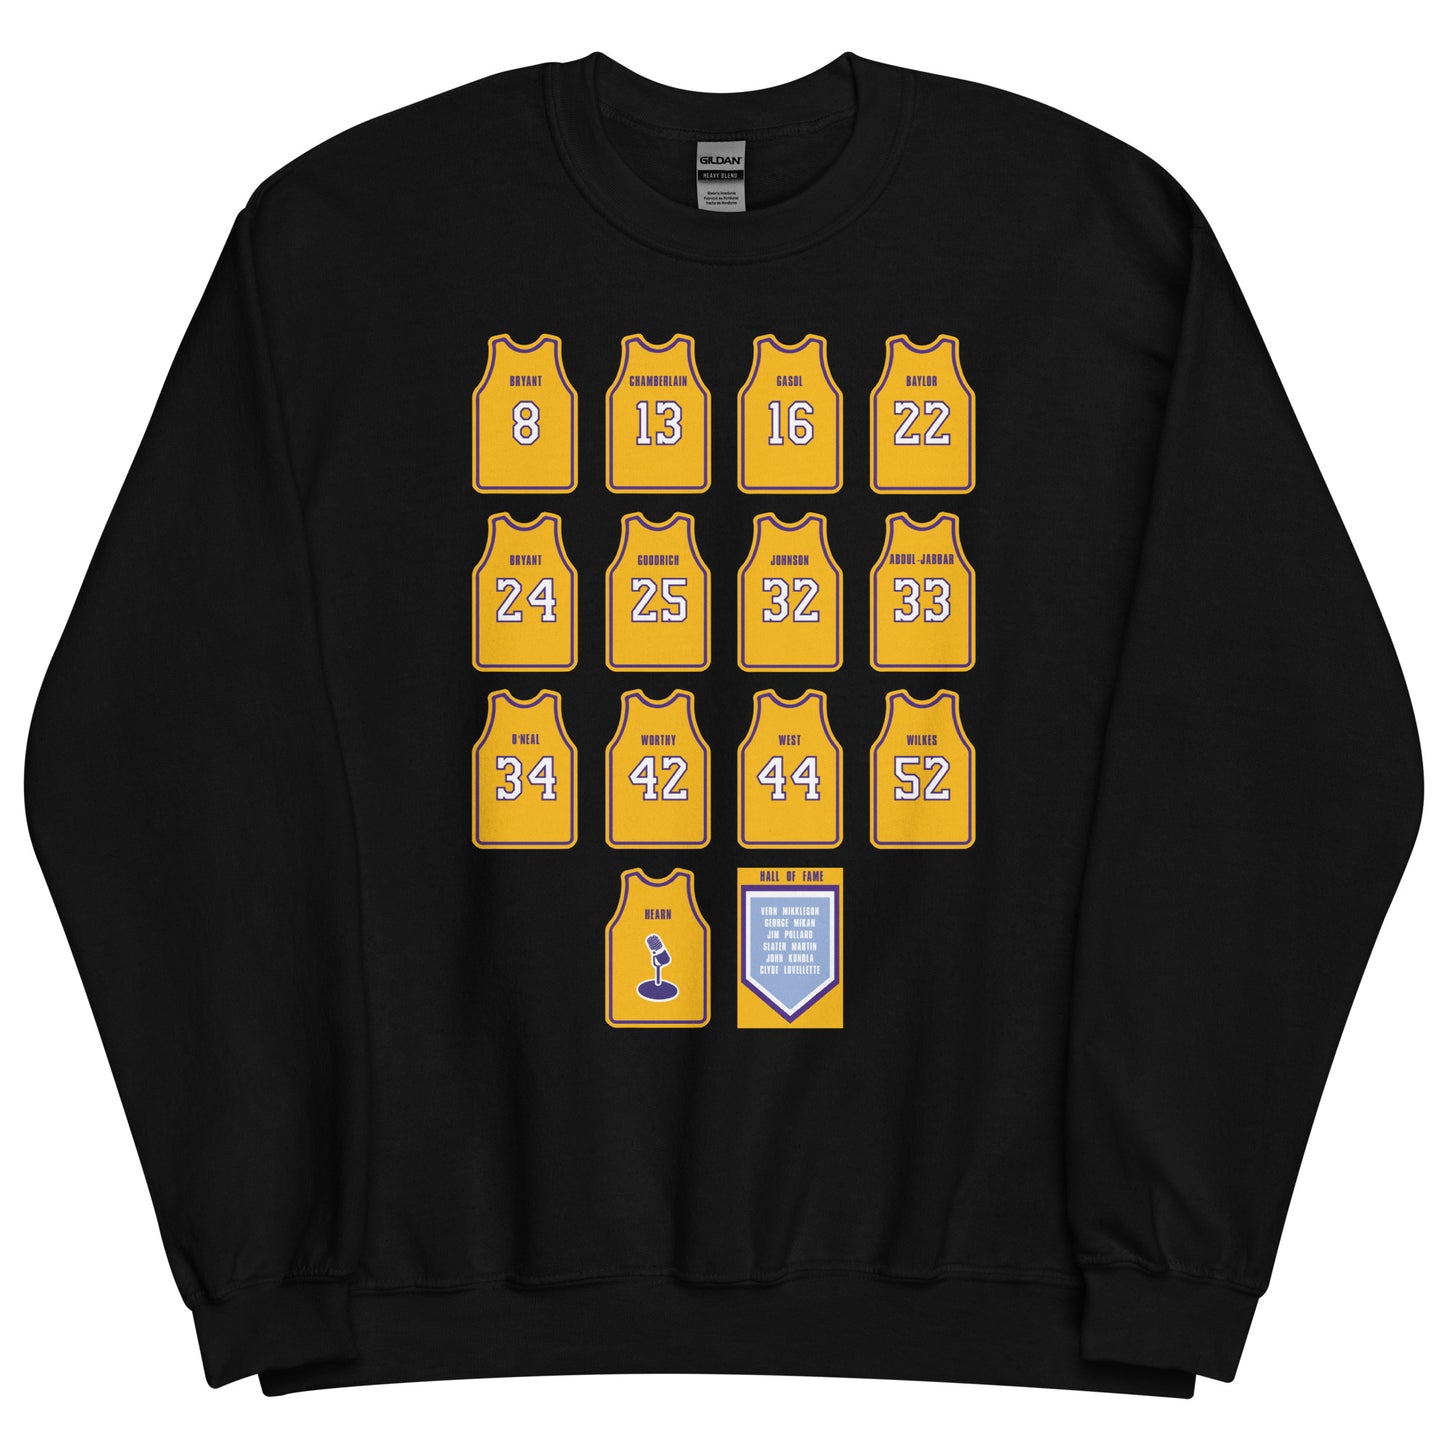 Los Angeles Lakers Retired Jerseys Illustrated Unisex Crewneck Sweatshirt